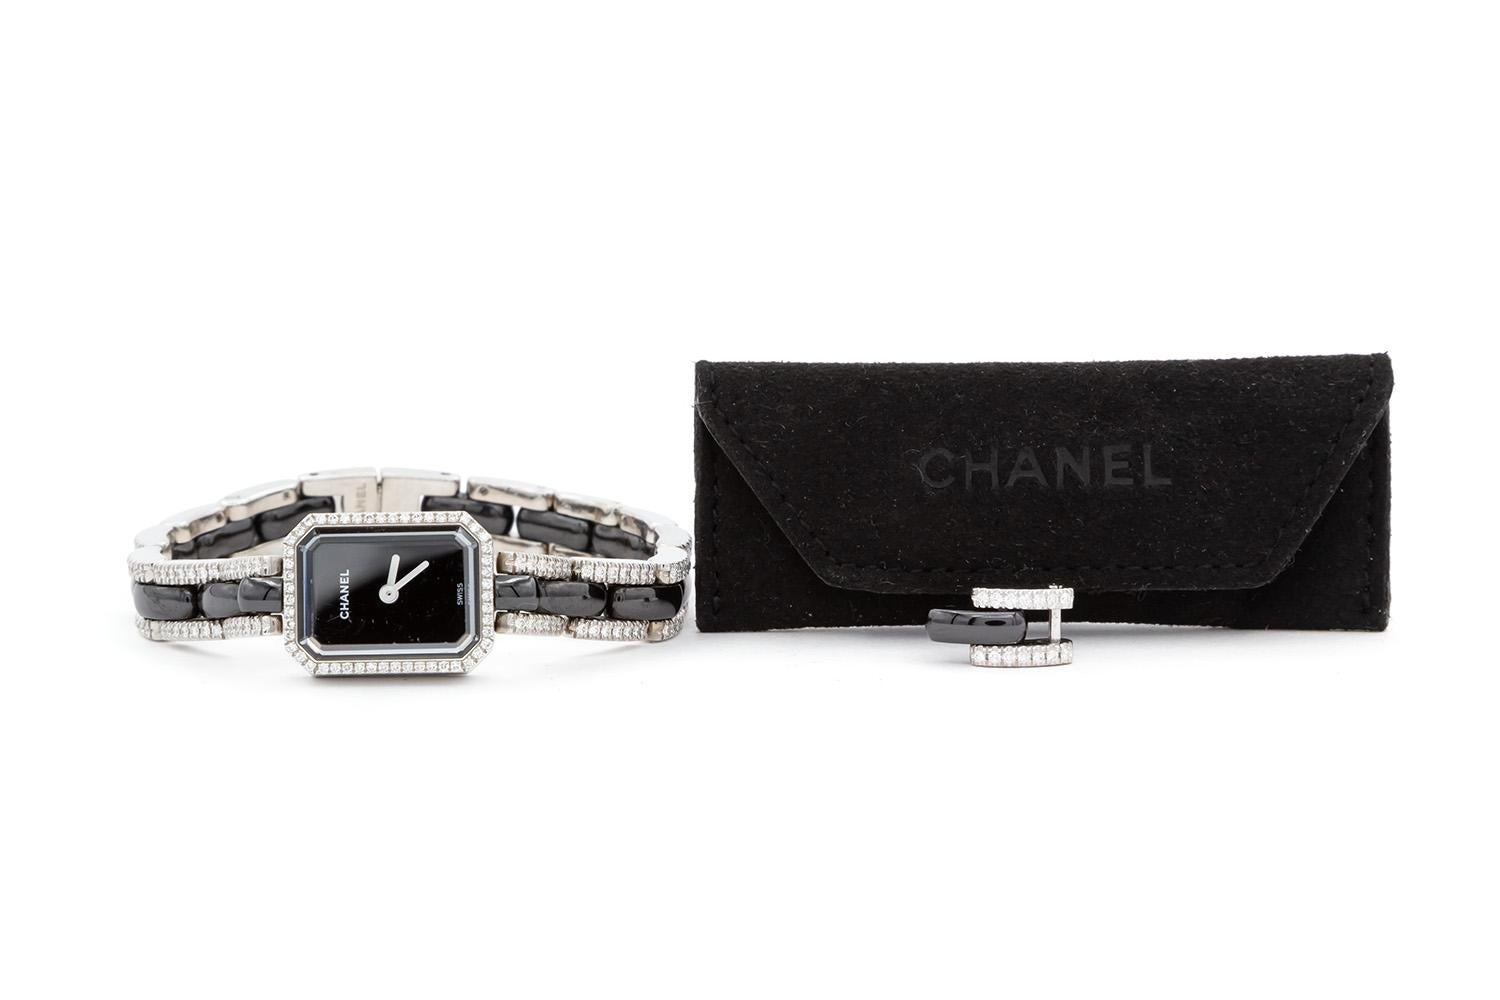 Chanel Premiere 18k White Diamond & Black Ceramic Quartz Watch H2147 In Excellent Condition For Sale In Tustin, CA